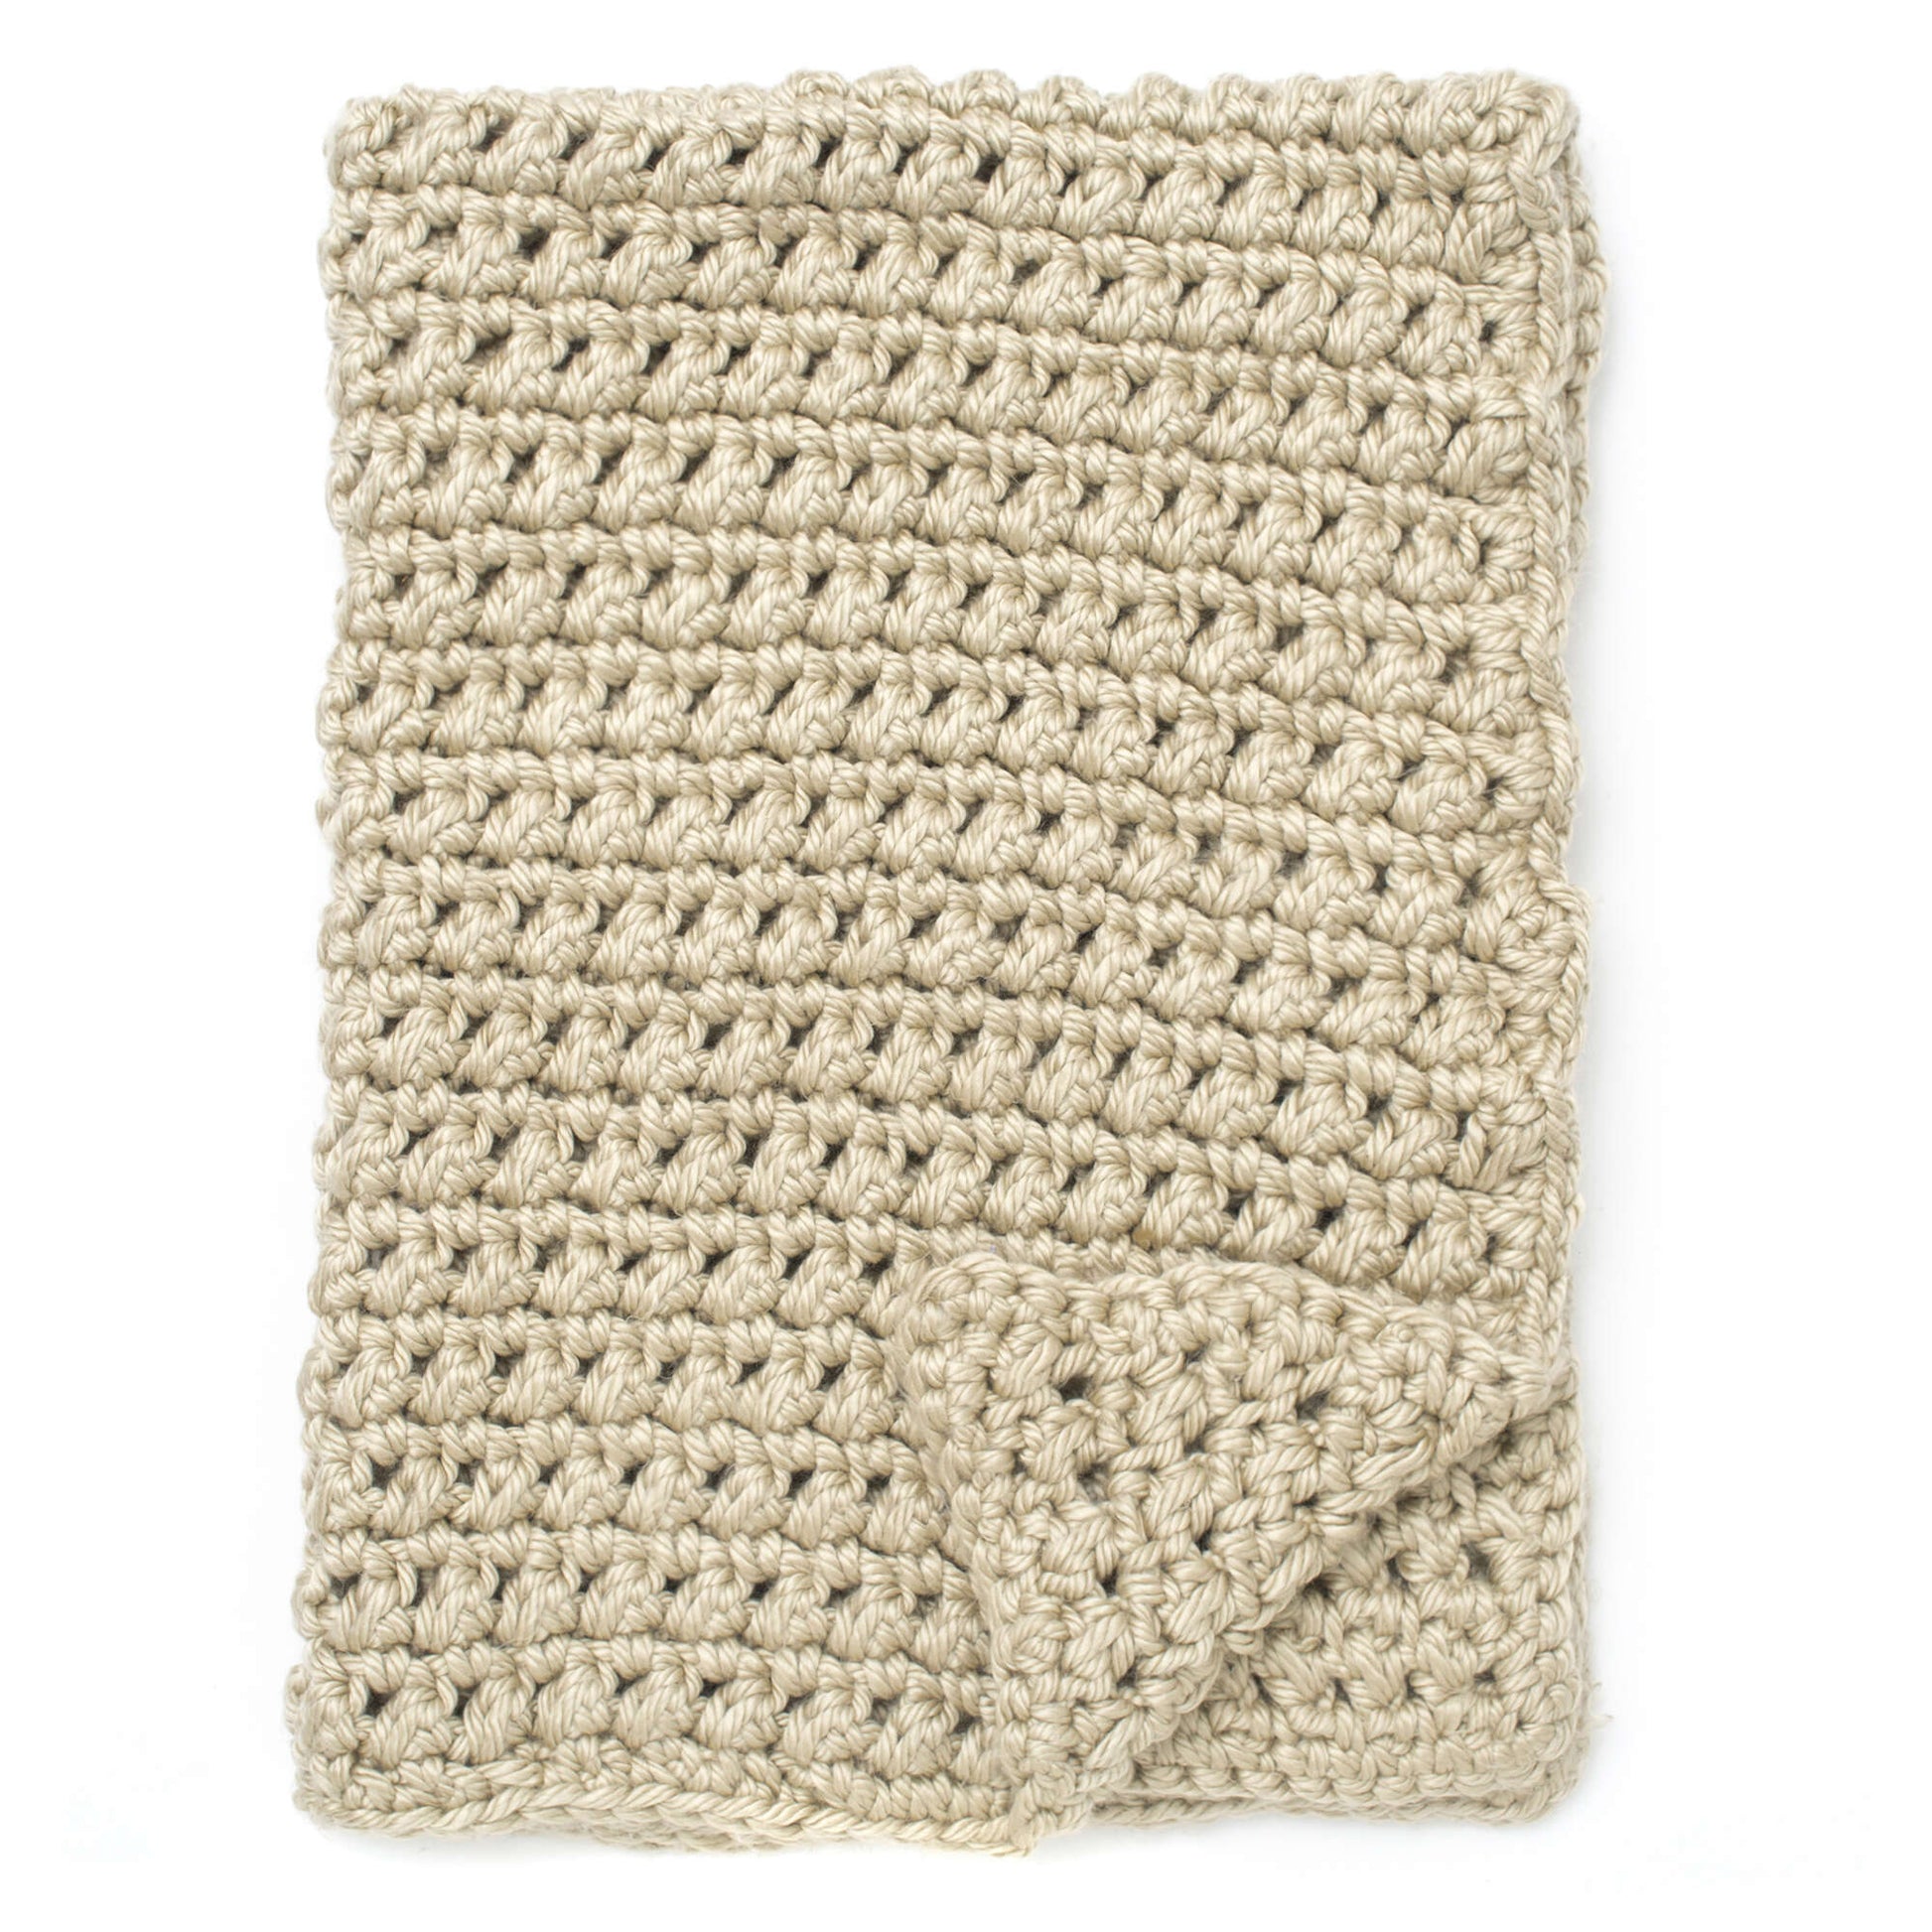 Free Bernat Easy Going Crochet Blanket Pattern